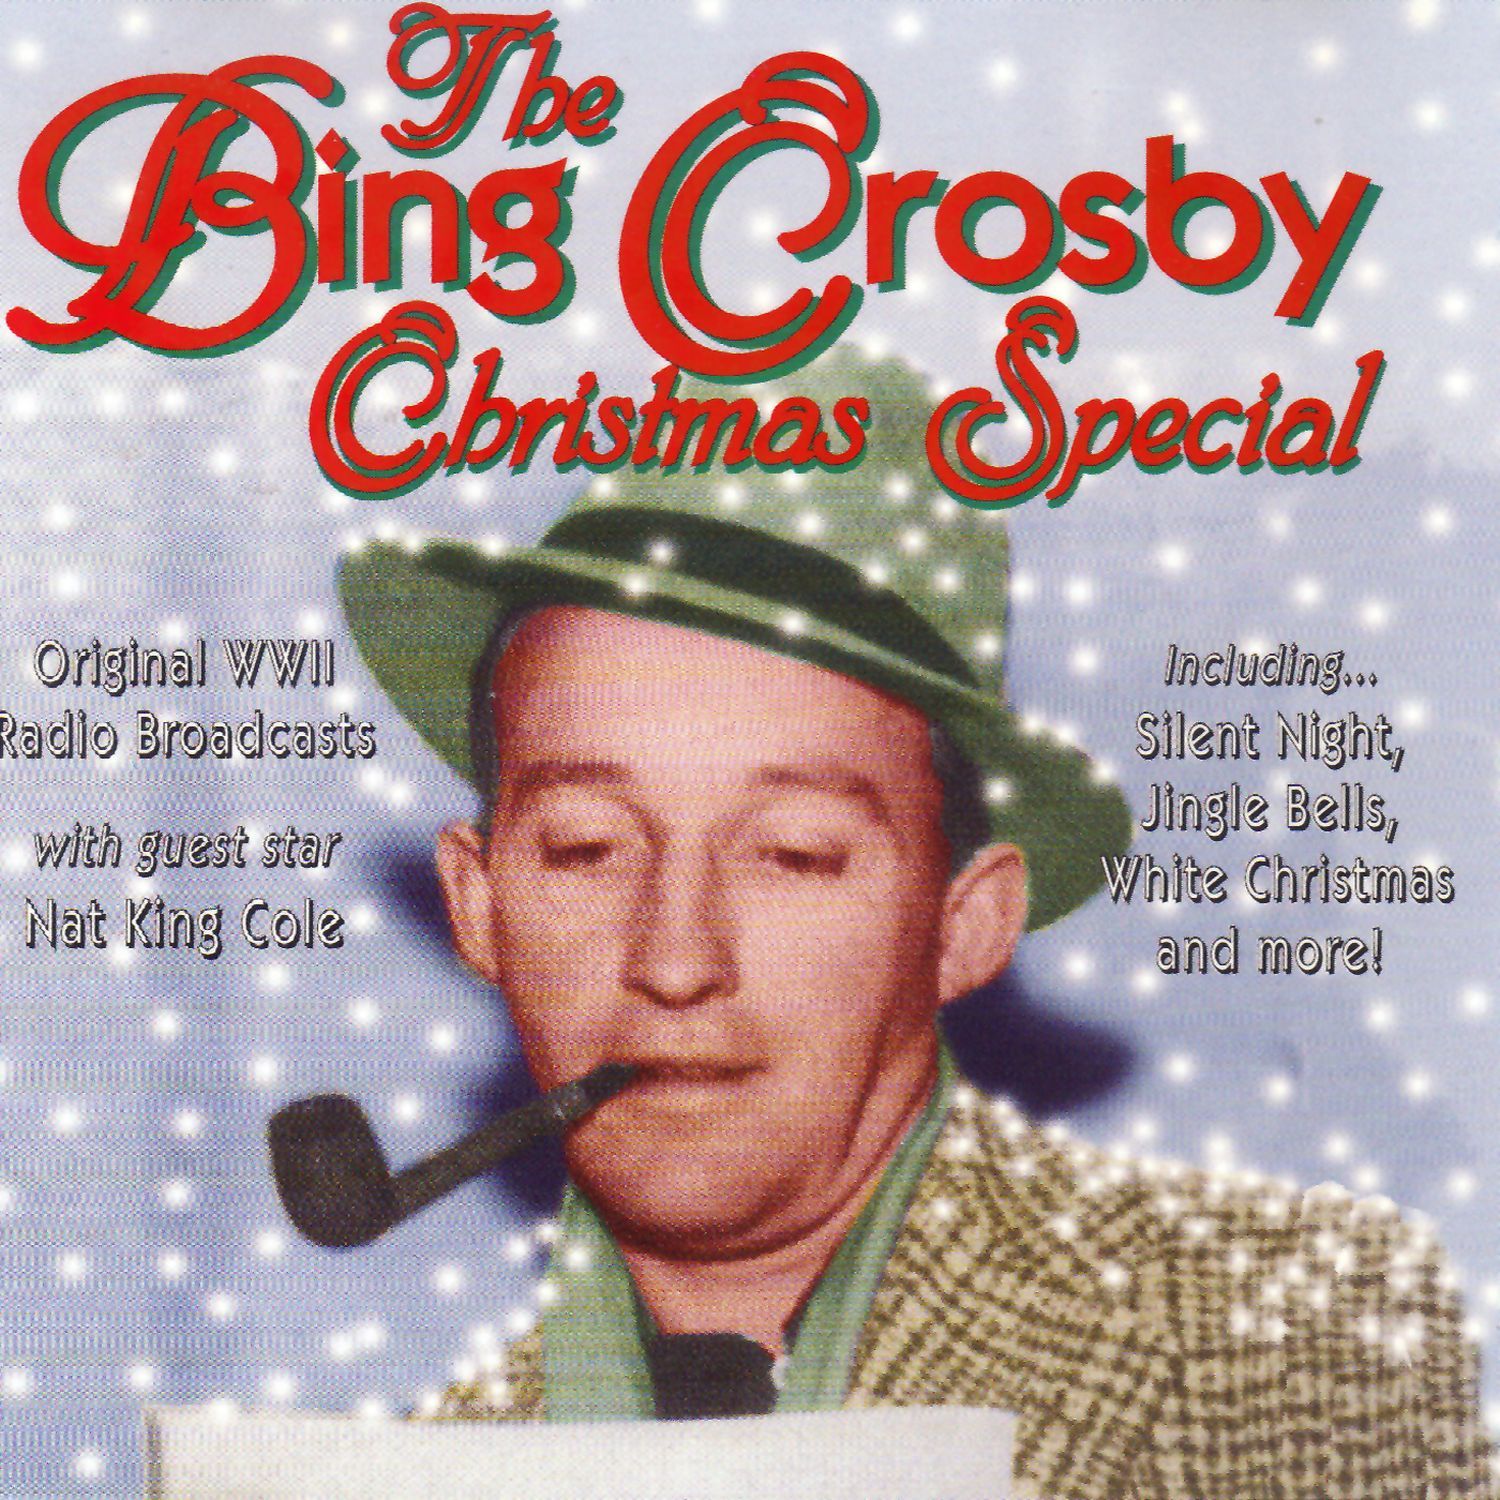 Christmas Special (Original Radio Broadcast)